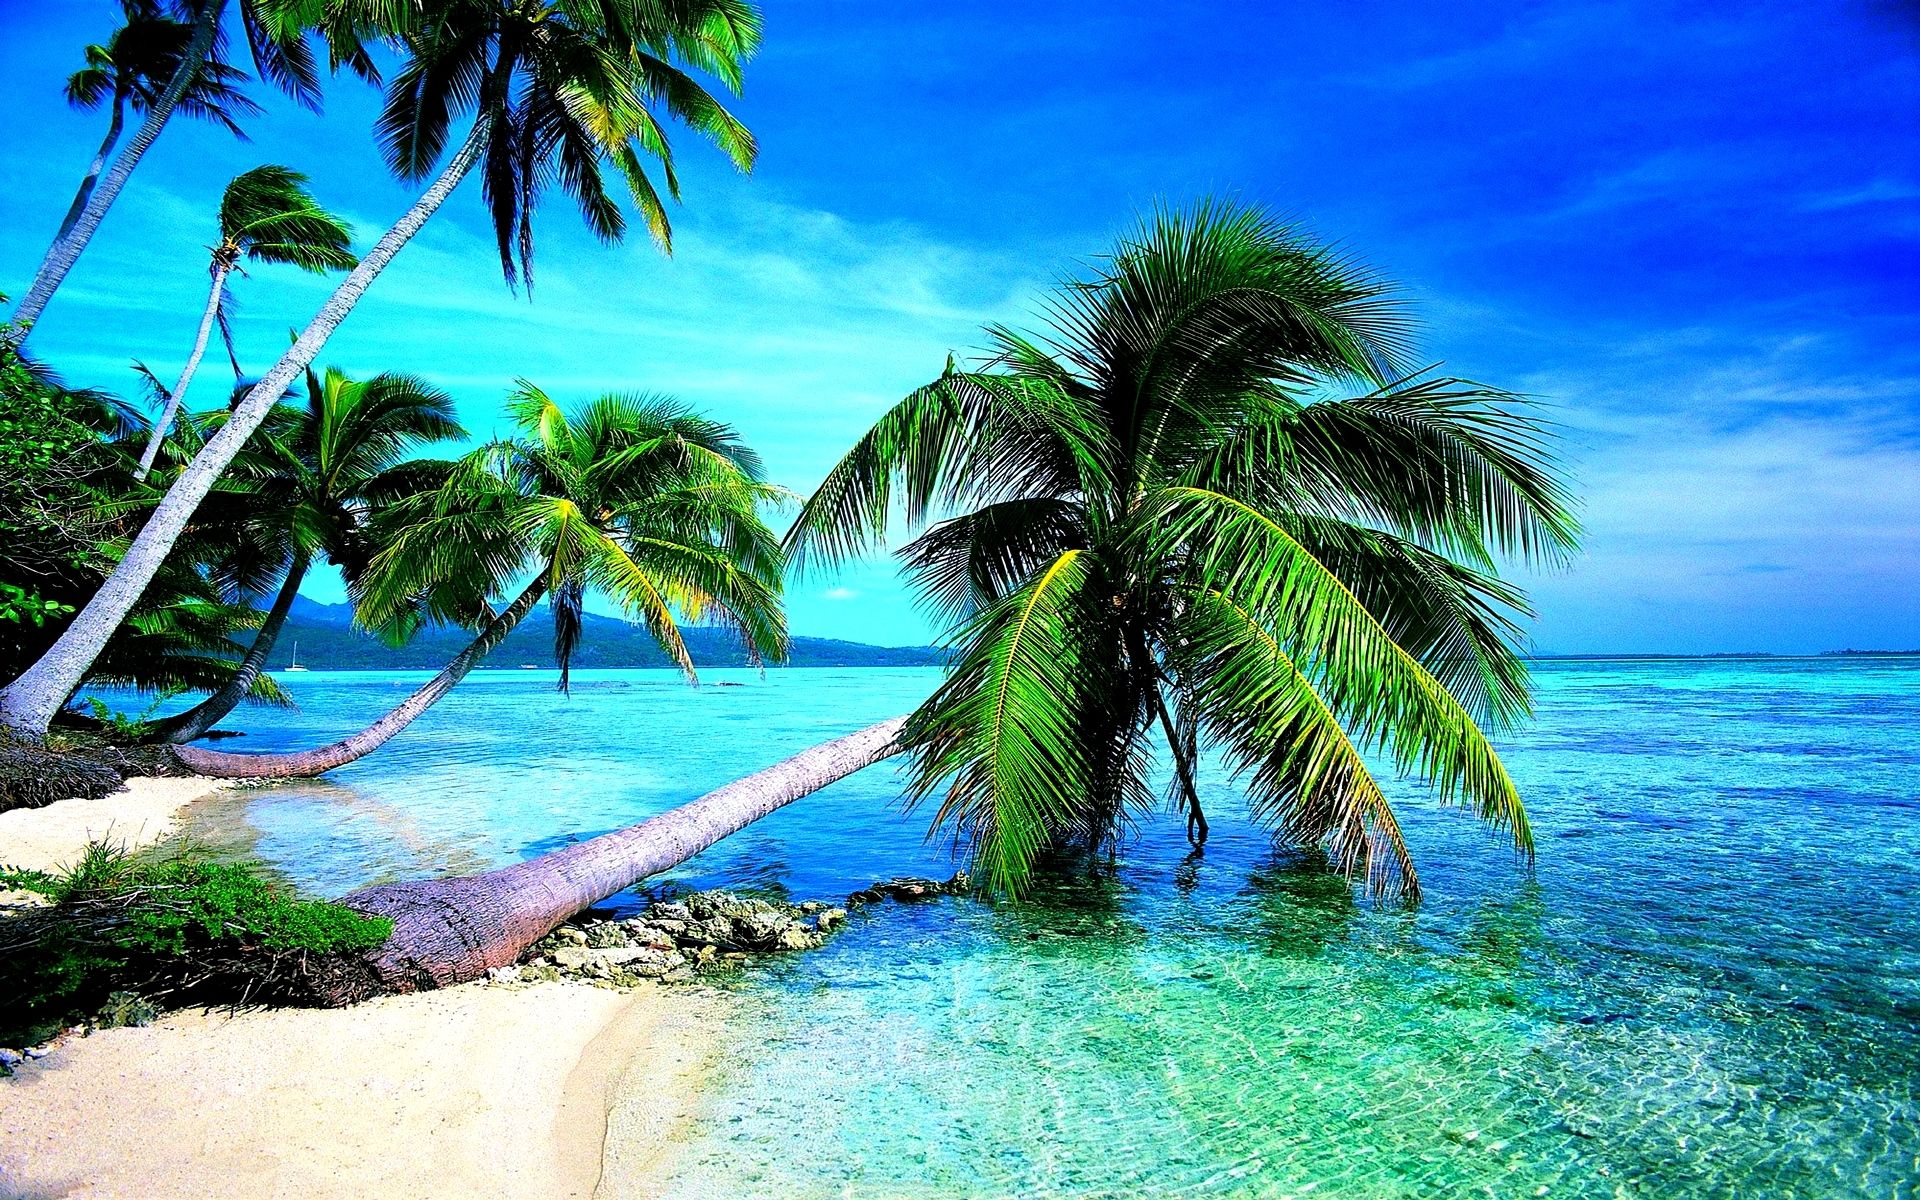 Hình nền desktop nhiệt đới: Hình nền desktop nhiệt đới sẽ mang đến cho bạn sự tươi trẻ và năng động. Hãy cập nhật cho màn hình máy tính của mình những hình ảnh tuyệt đẹp về cát trắng, biển xanh và nắng chói chang trên bãi biển. Xem ngay hình ảnh liên quan để lựa chọn những hình nền desktop phù hợp với sở thích của bạn.